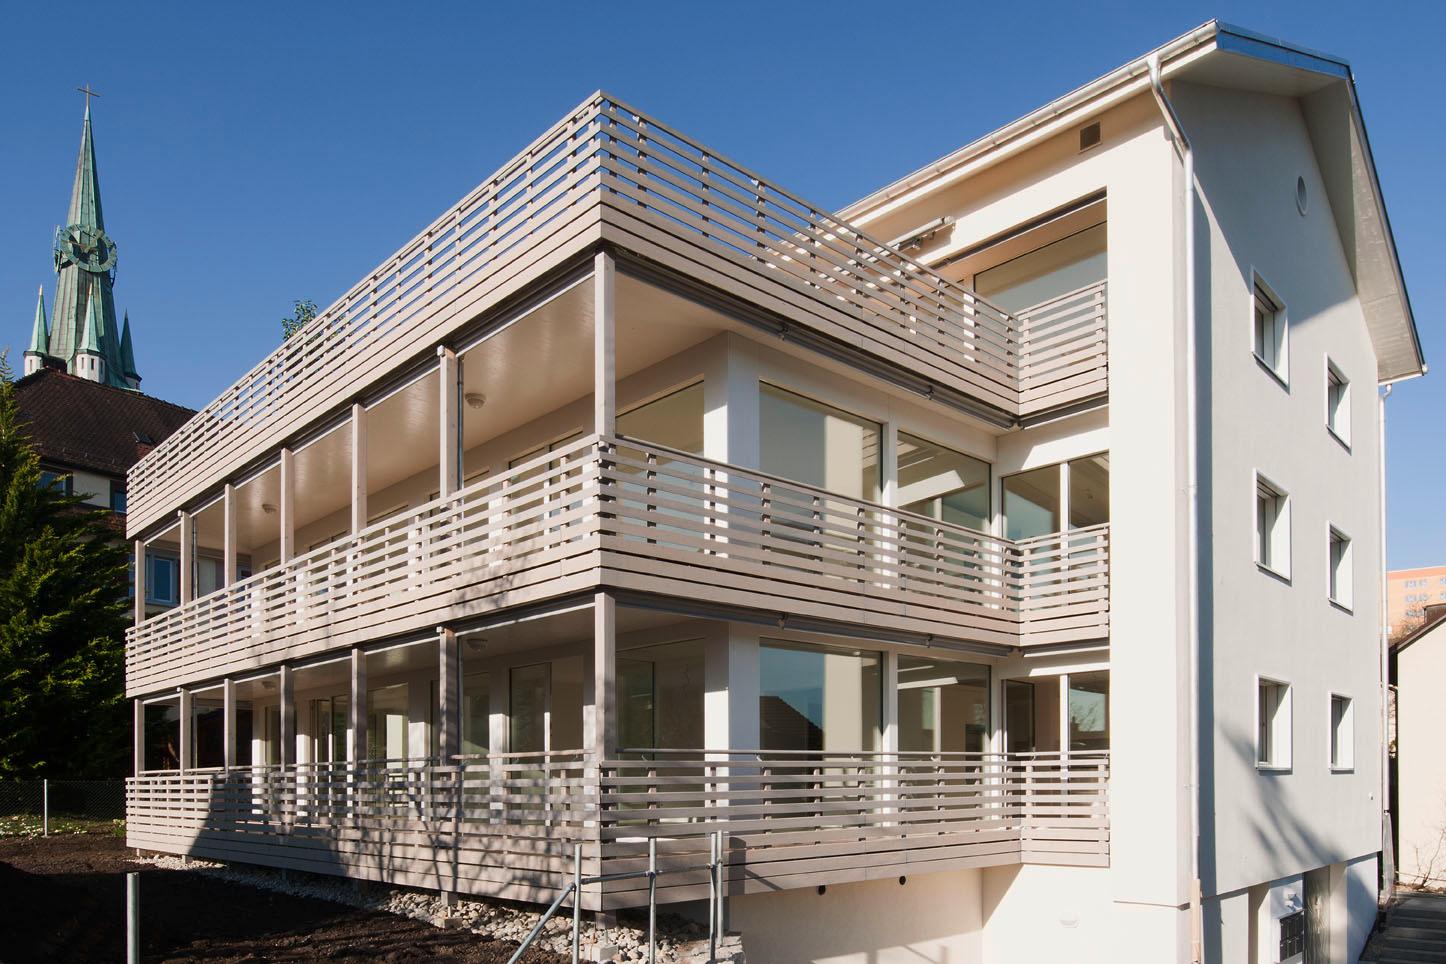  Architektur-Reportage: Weiter gebaut und gewonnen: Die Terrassen verfügen über neuen Wohnraum